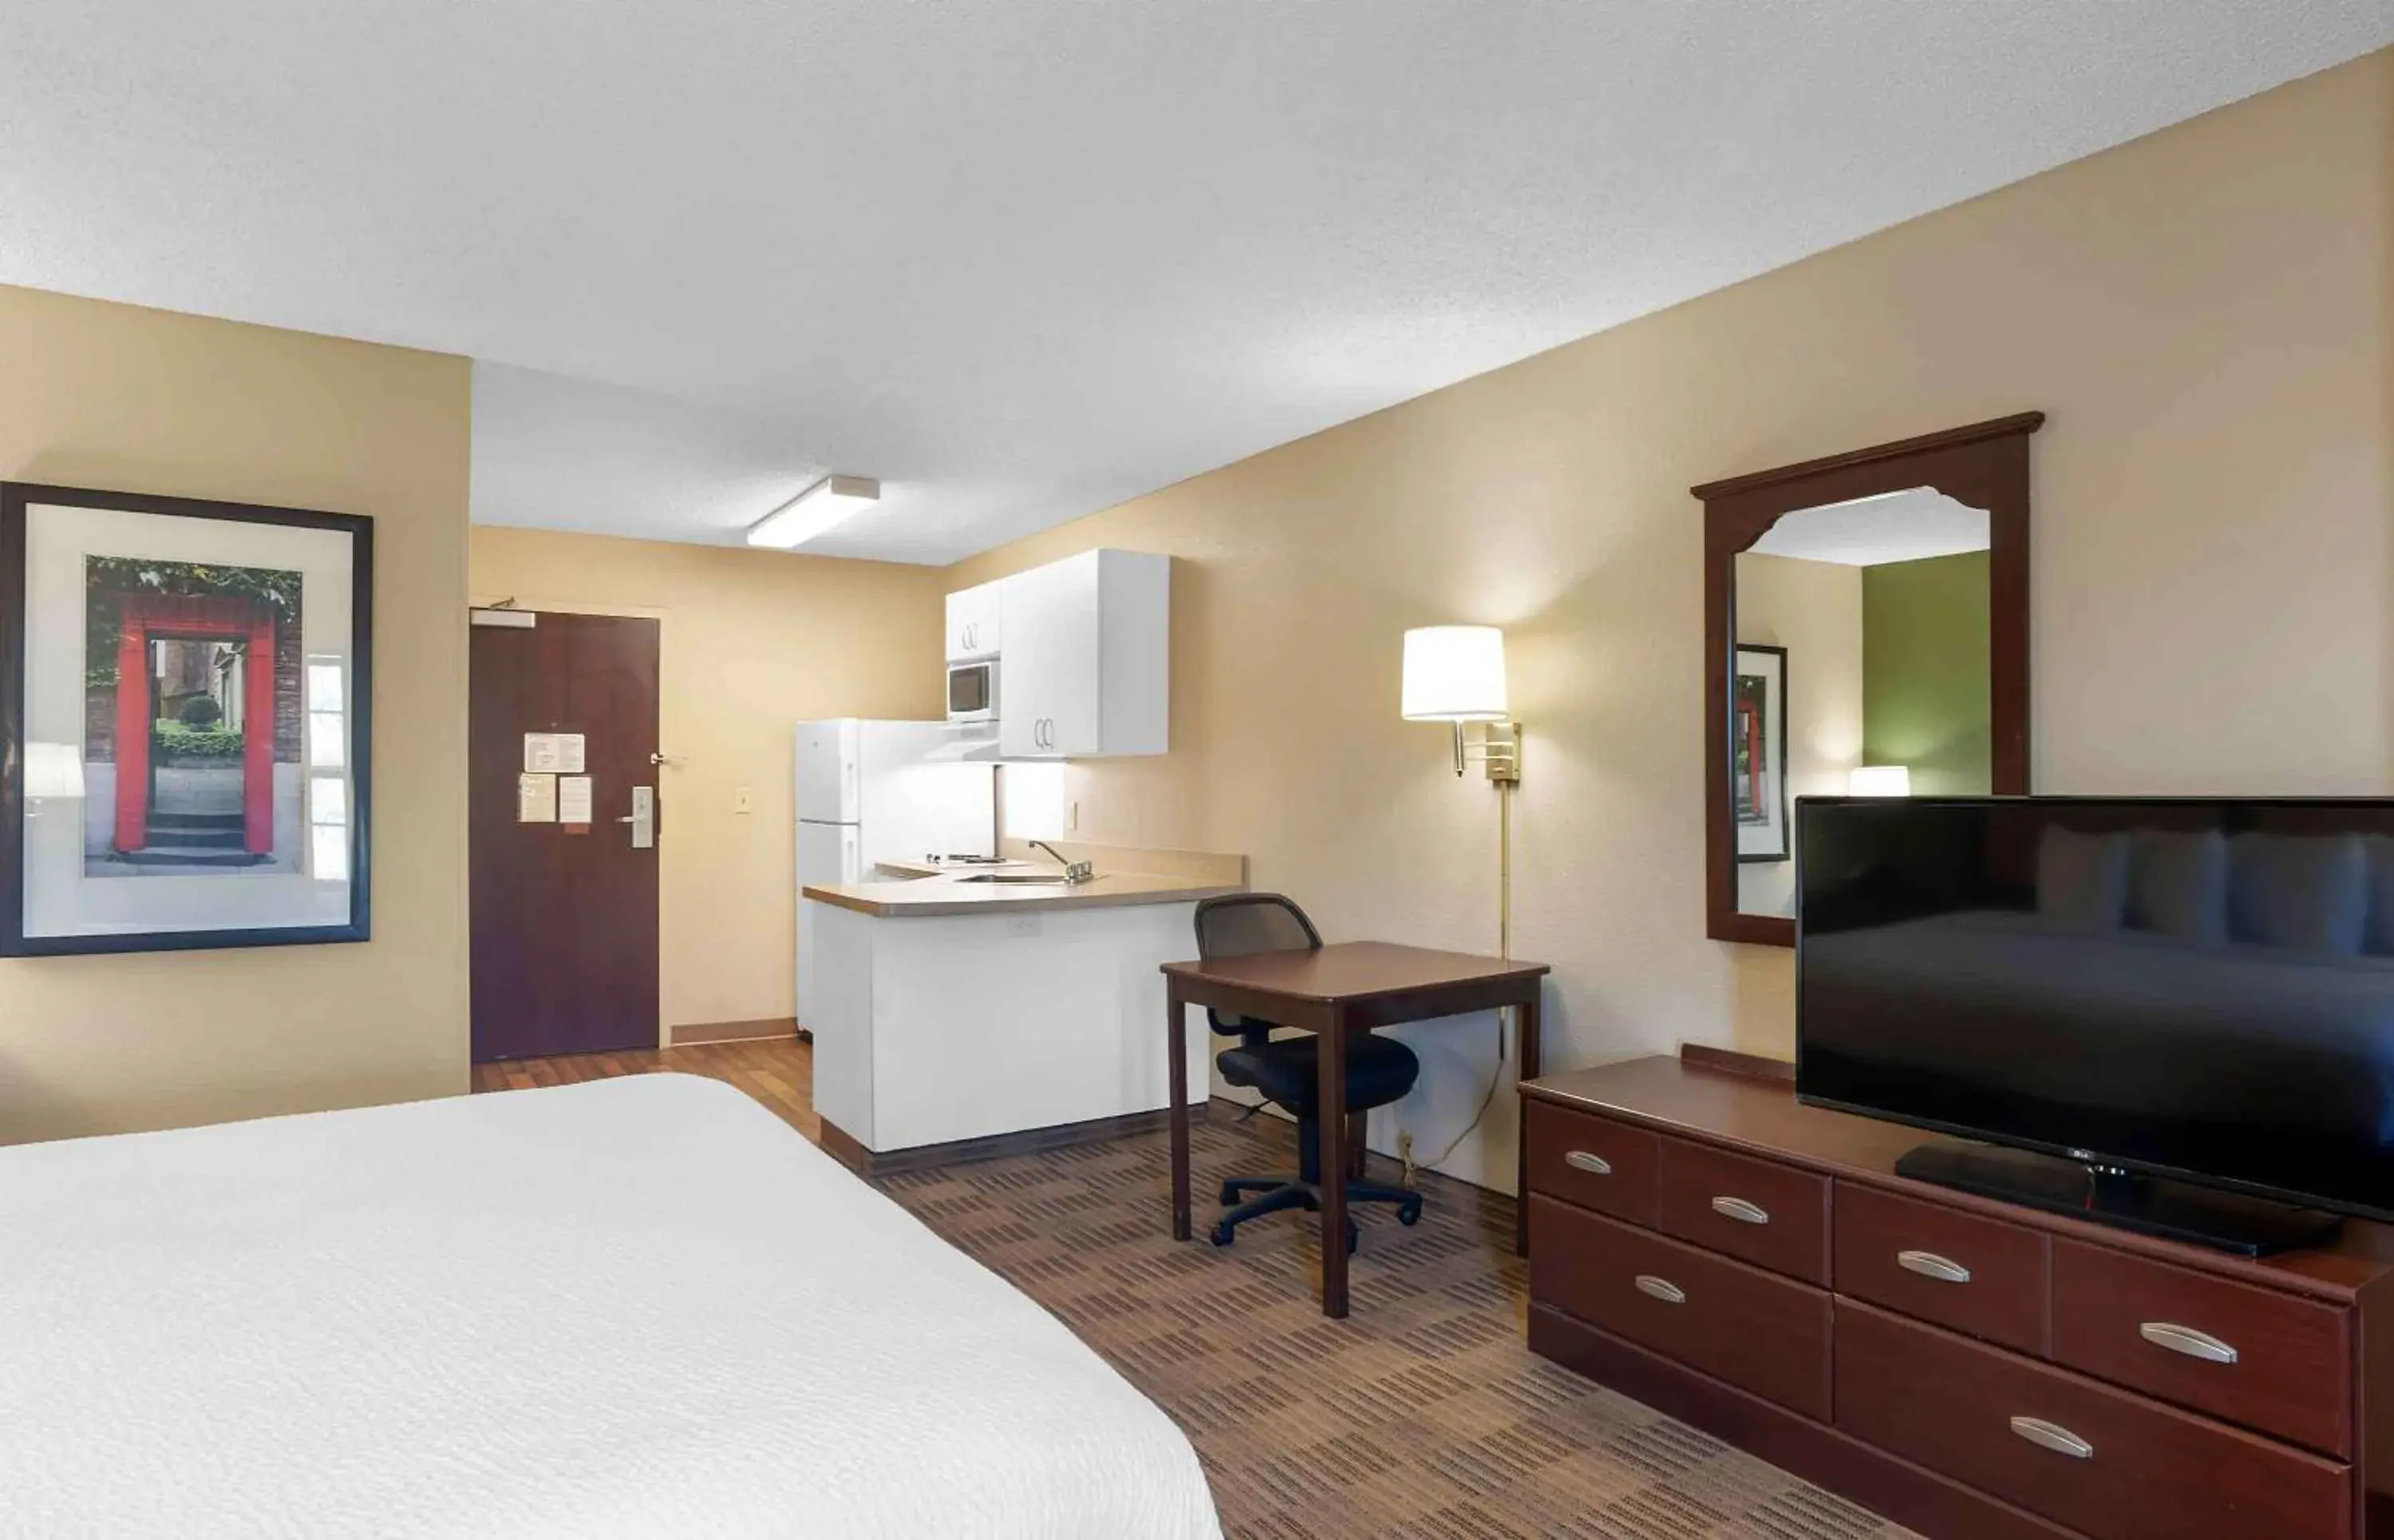 Bedroom, TV/Entertainment Center in Extended Stay America Suites - Kansas City - Lenexa - 87th St